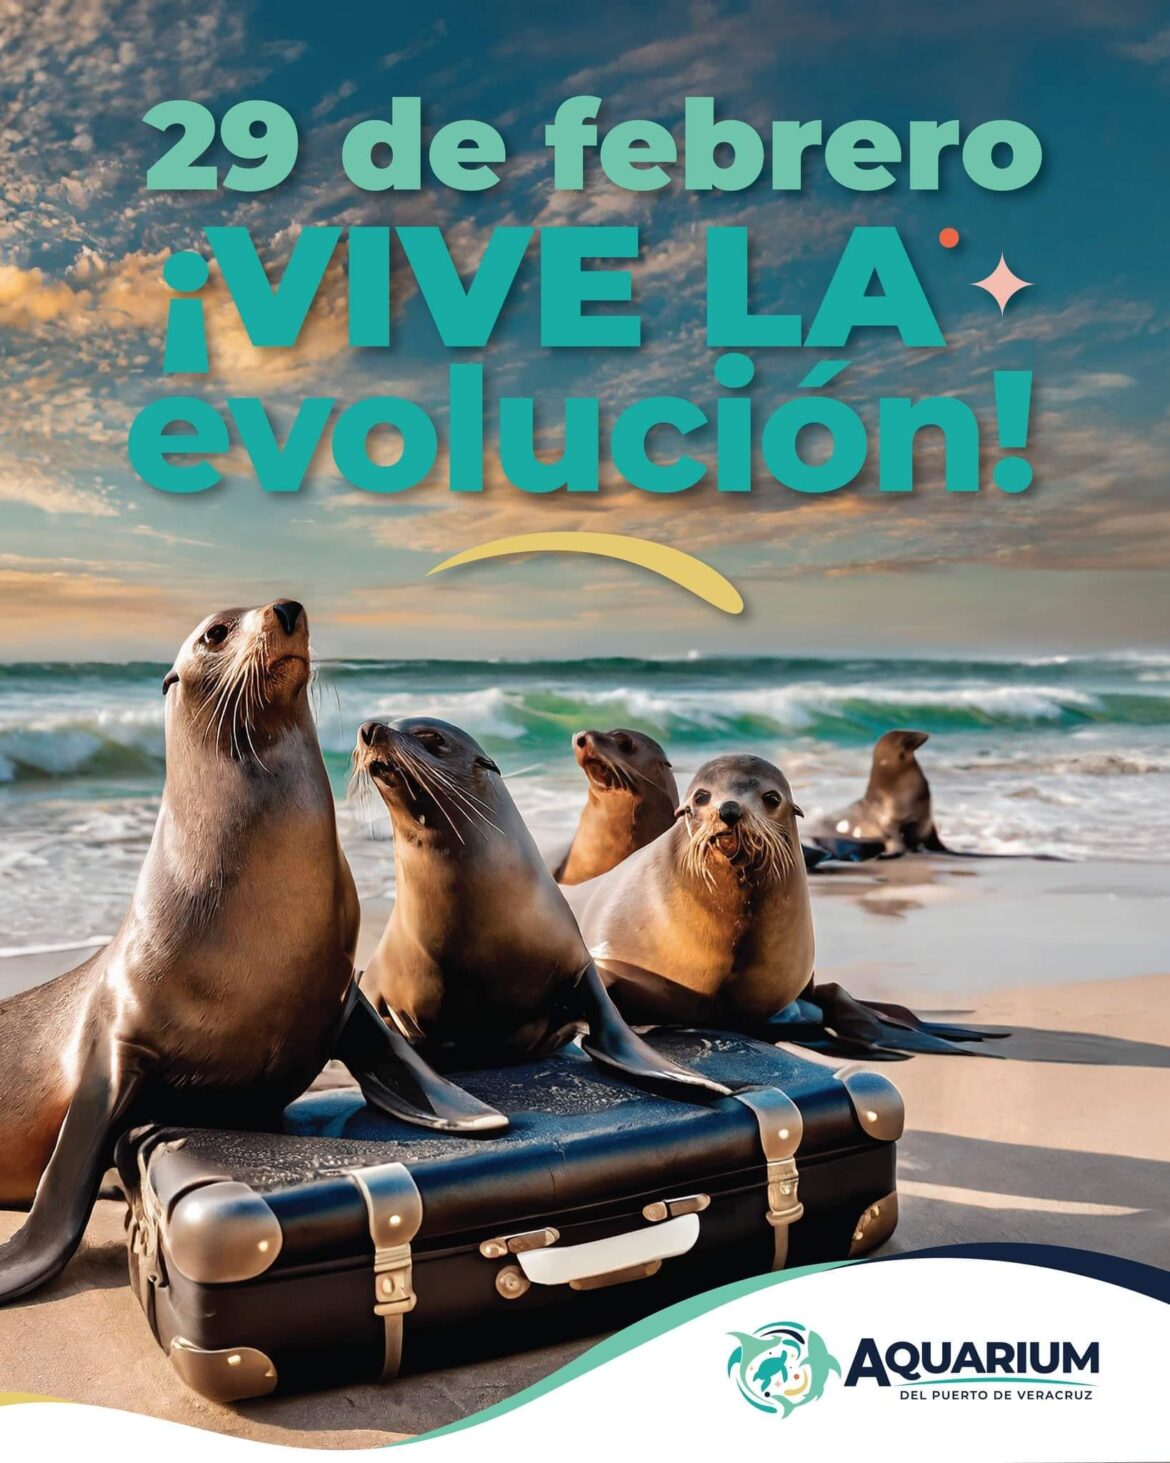 El 29 de febrero llegan los lobos marinos, nueva atracción del Aquarium Veracruz